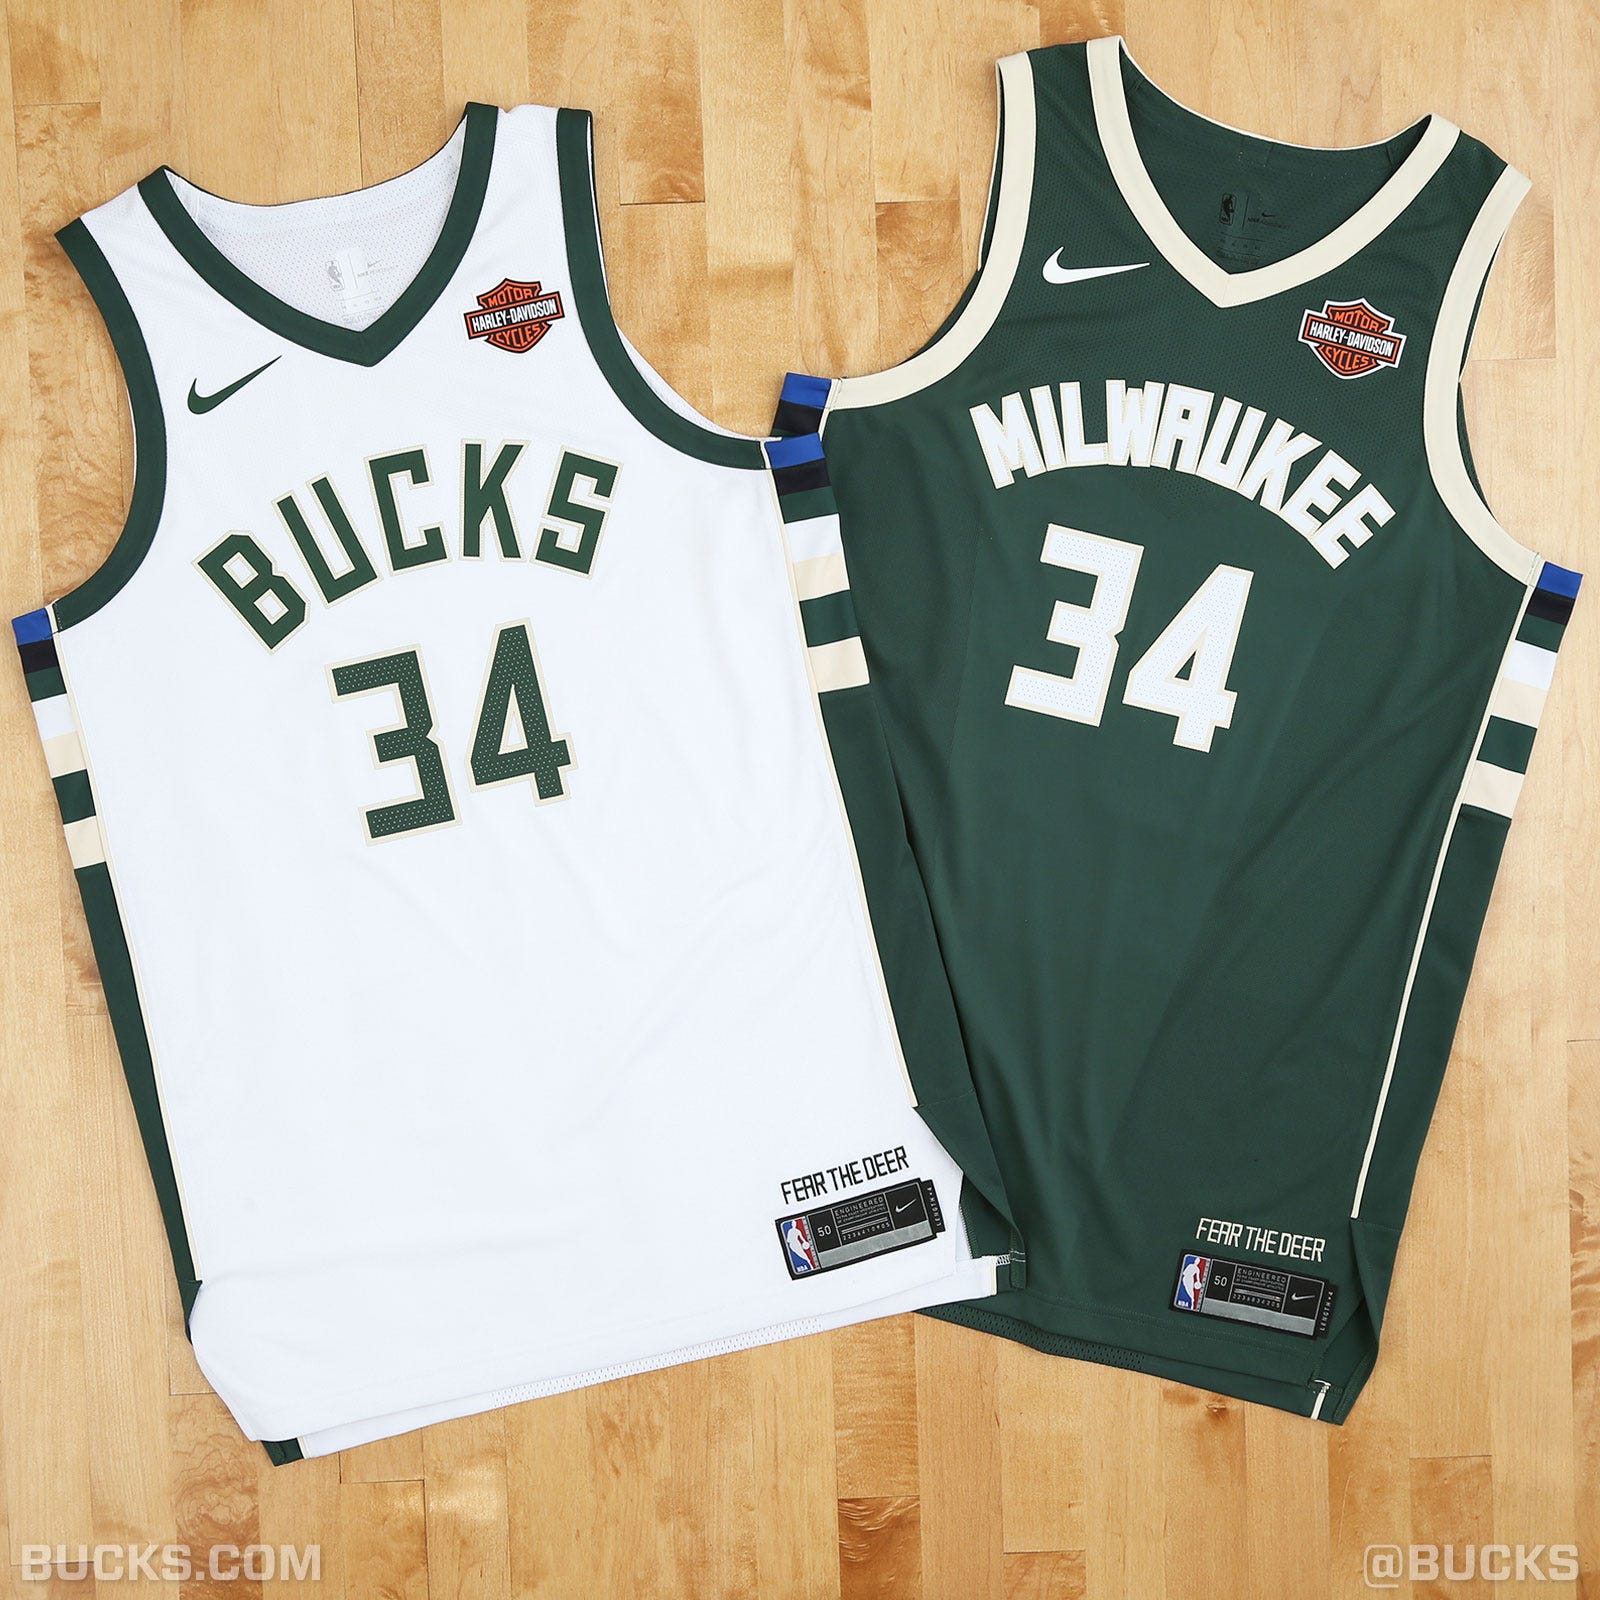 Milwaukee Bucks game jerseys to feature 